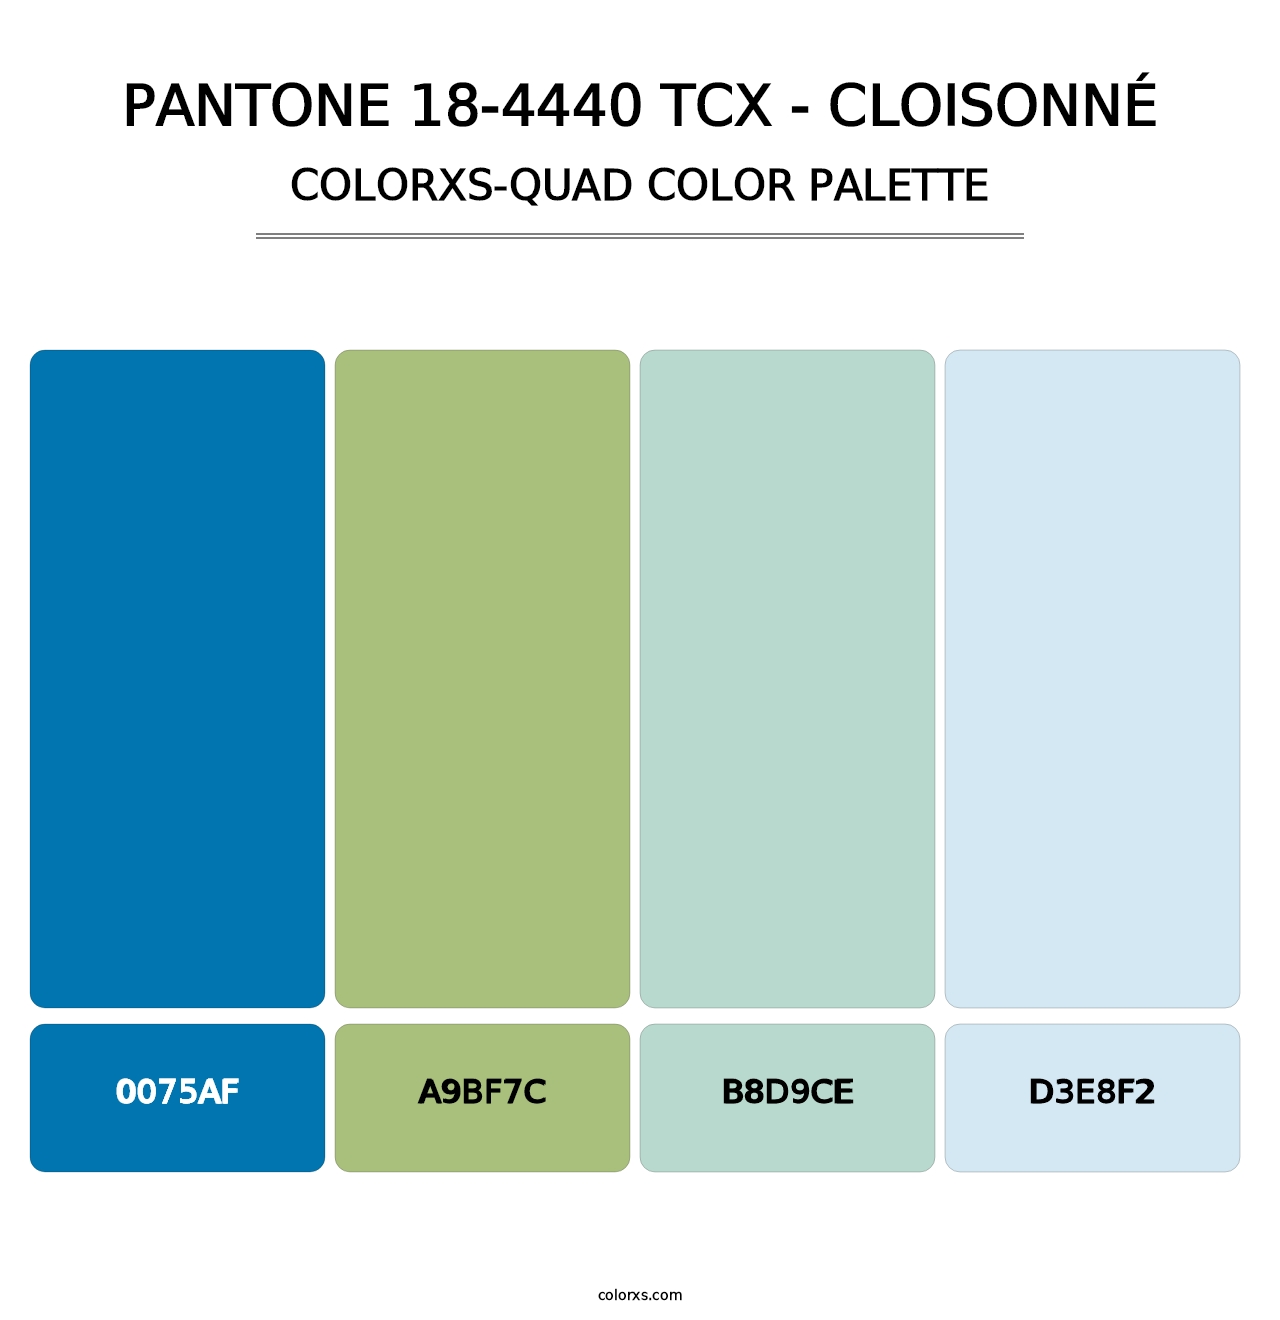 PANTONE 18-4440 TCX - Cloisonné - Colorxs Quad Palette